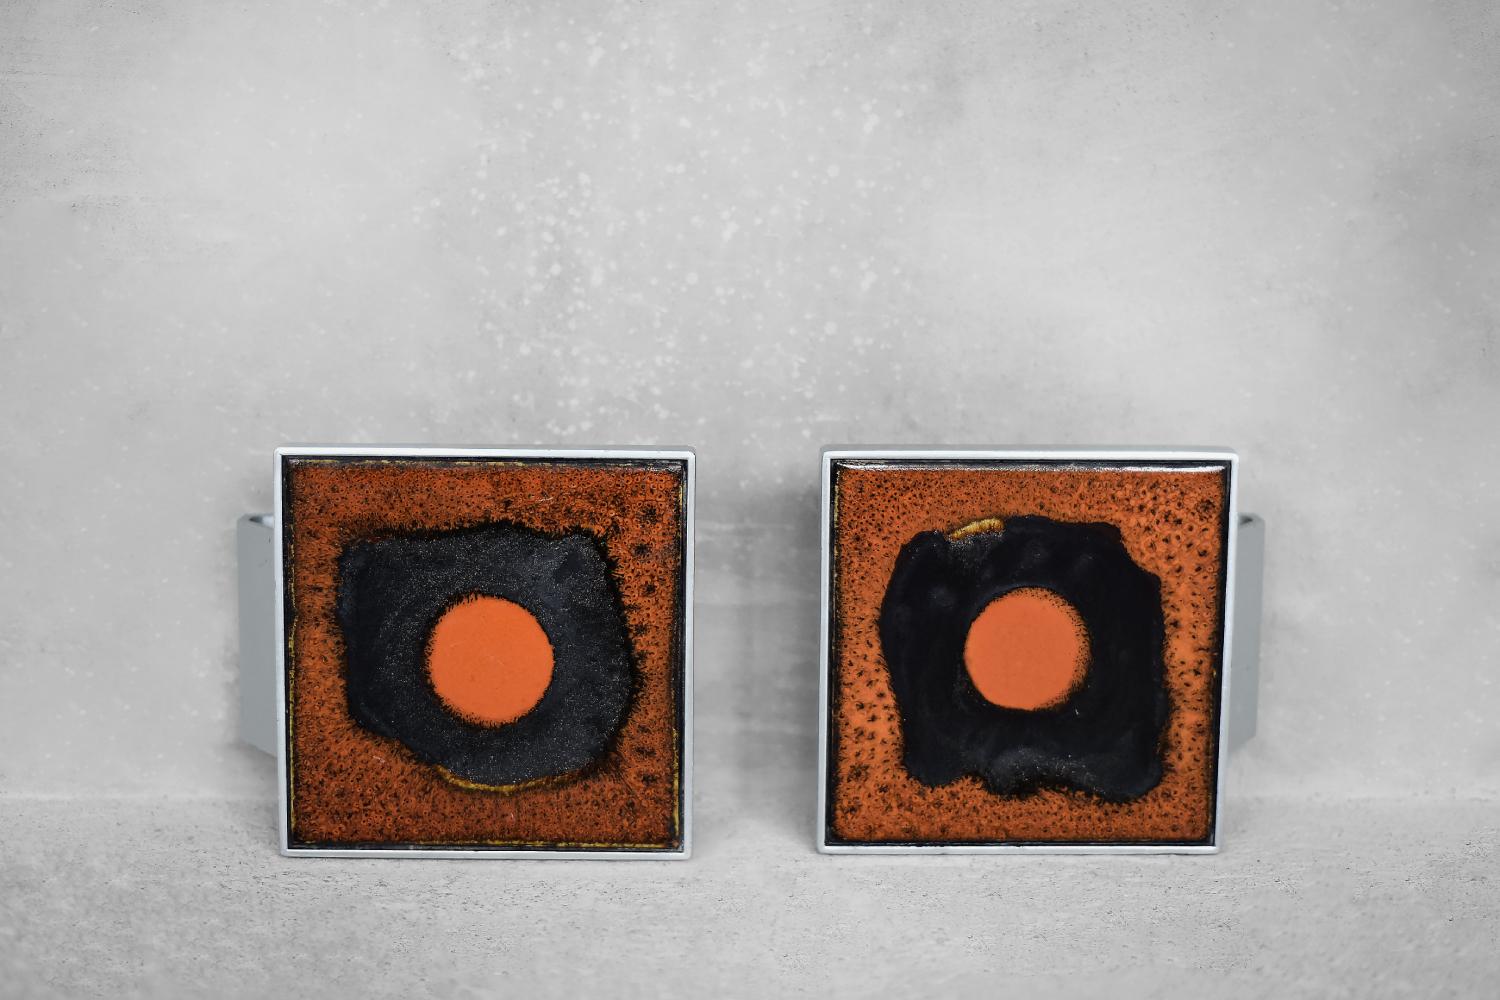 Dieses Paar origineller Türgriffe wurde von der belgischen Künstlerin Juliette Belarti in den 1960er Jahren entworfen und hergestellt. Der geometrische Rahmen ist aus Aluminium und die Mitte ist mit einer orange und schwarz glasierten Keramikplatte